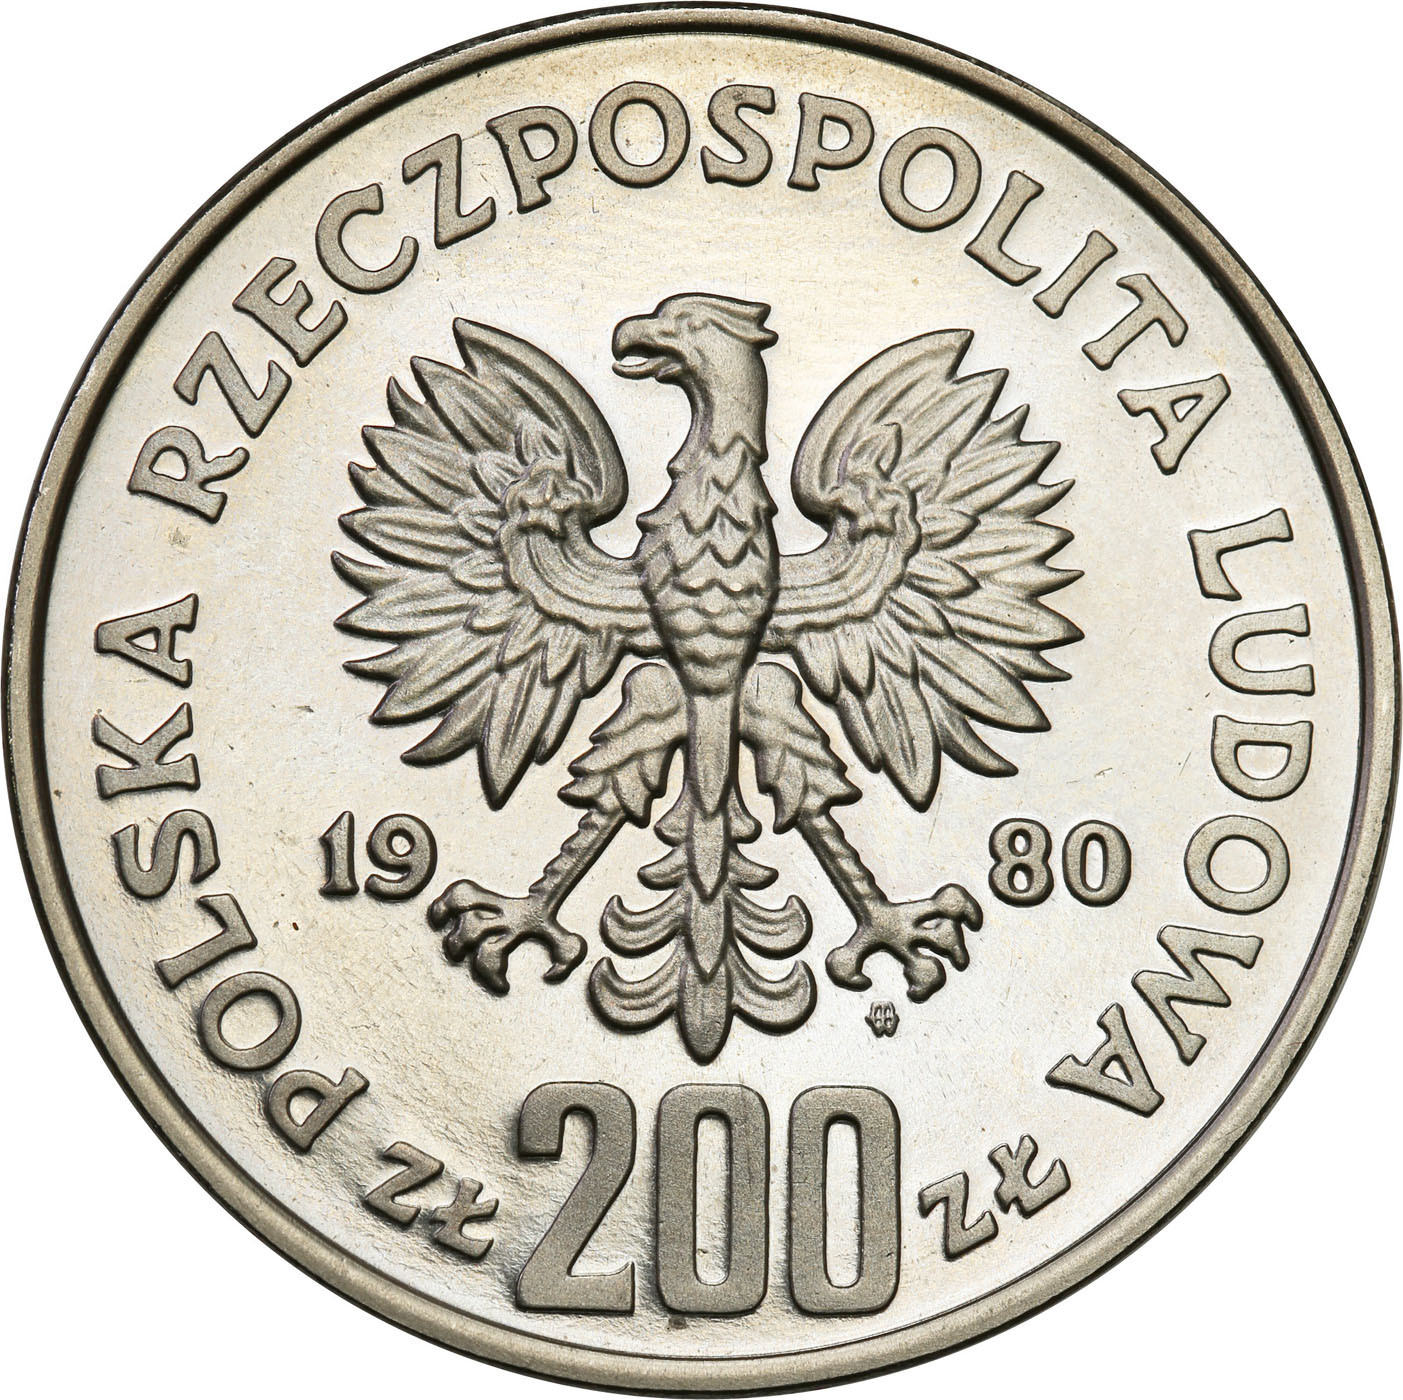 PRL. PRÓBA Nikiel 200 złotych 1980 – XIII Zimowe Igrzyska Olimpijskie